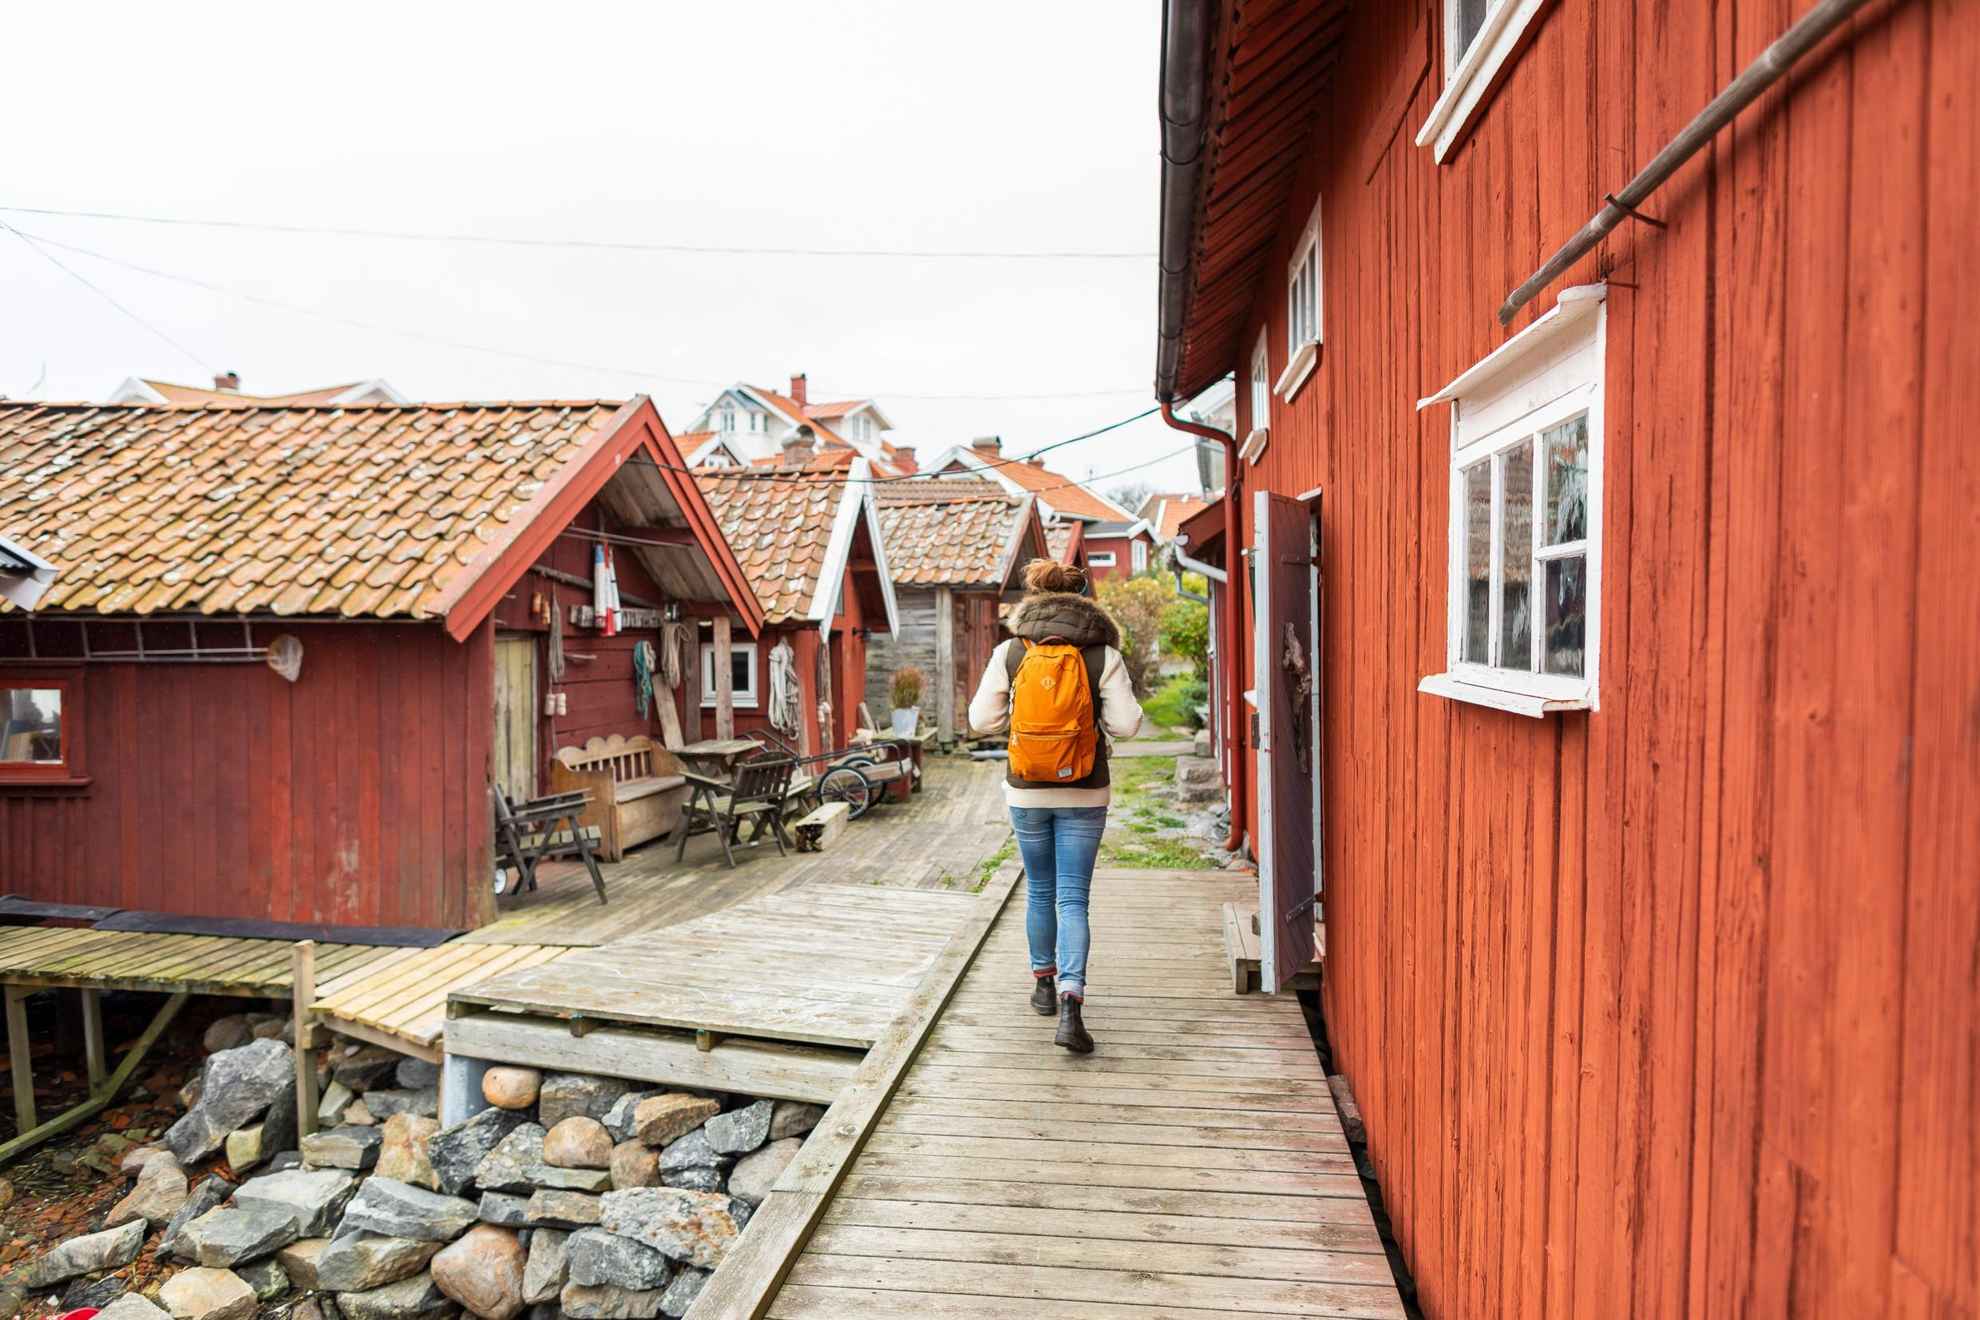 Een persoon met een rugzak loopt tussen rode houten huizen.